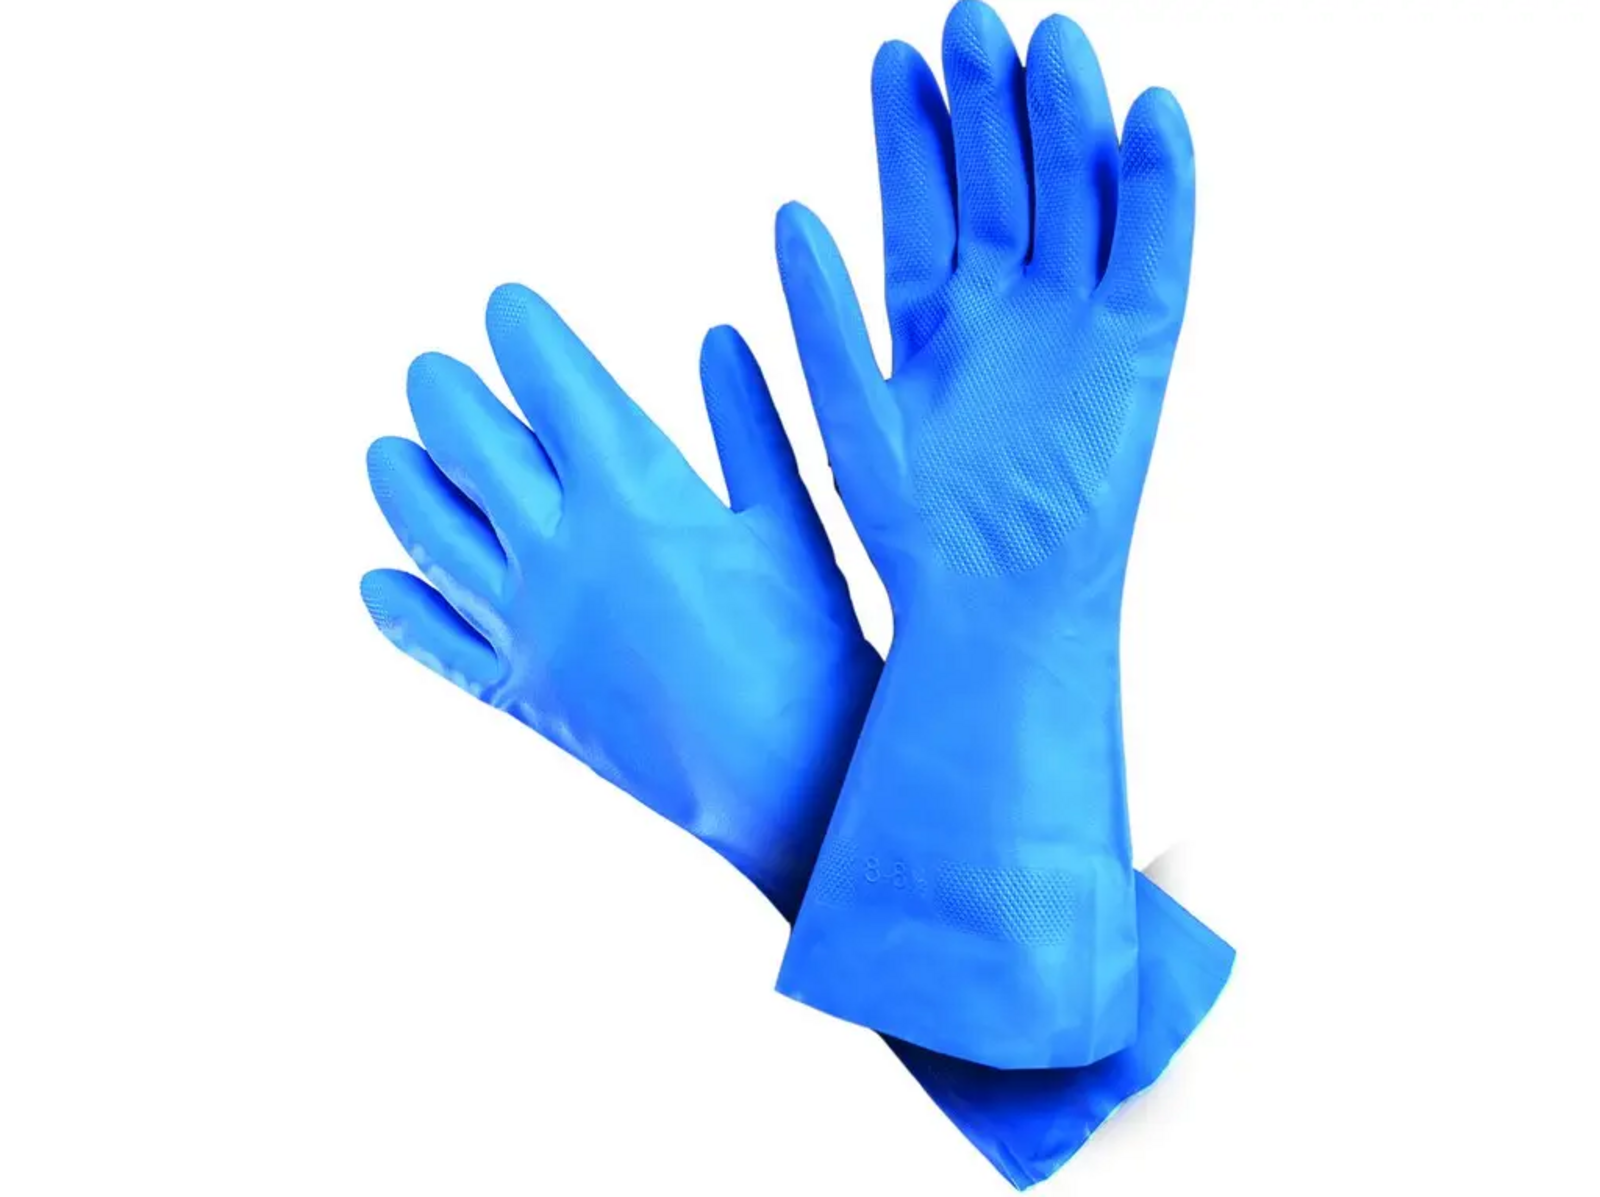 Kyselinovzdorné rukavice Mapa Ultranitril 495 - veľkosť: 9/L, farba: modrá